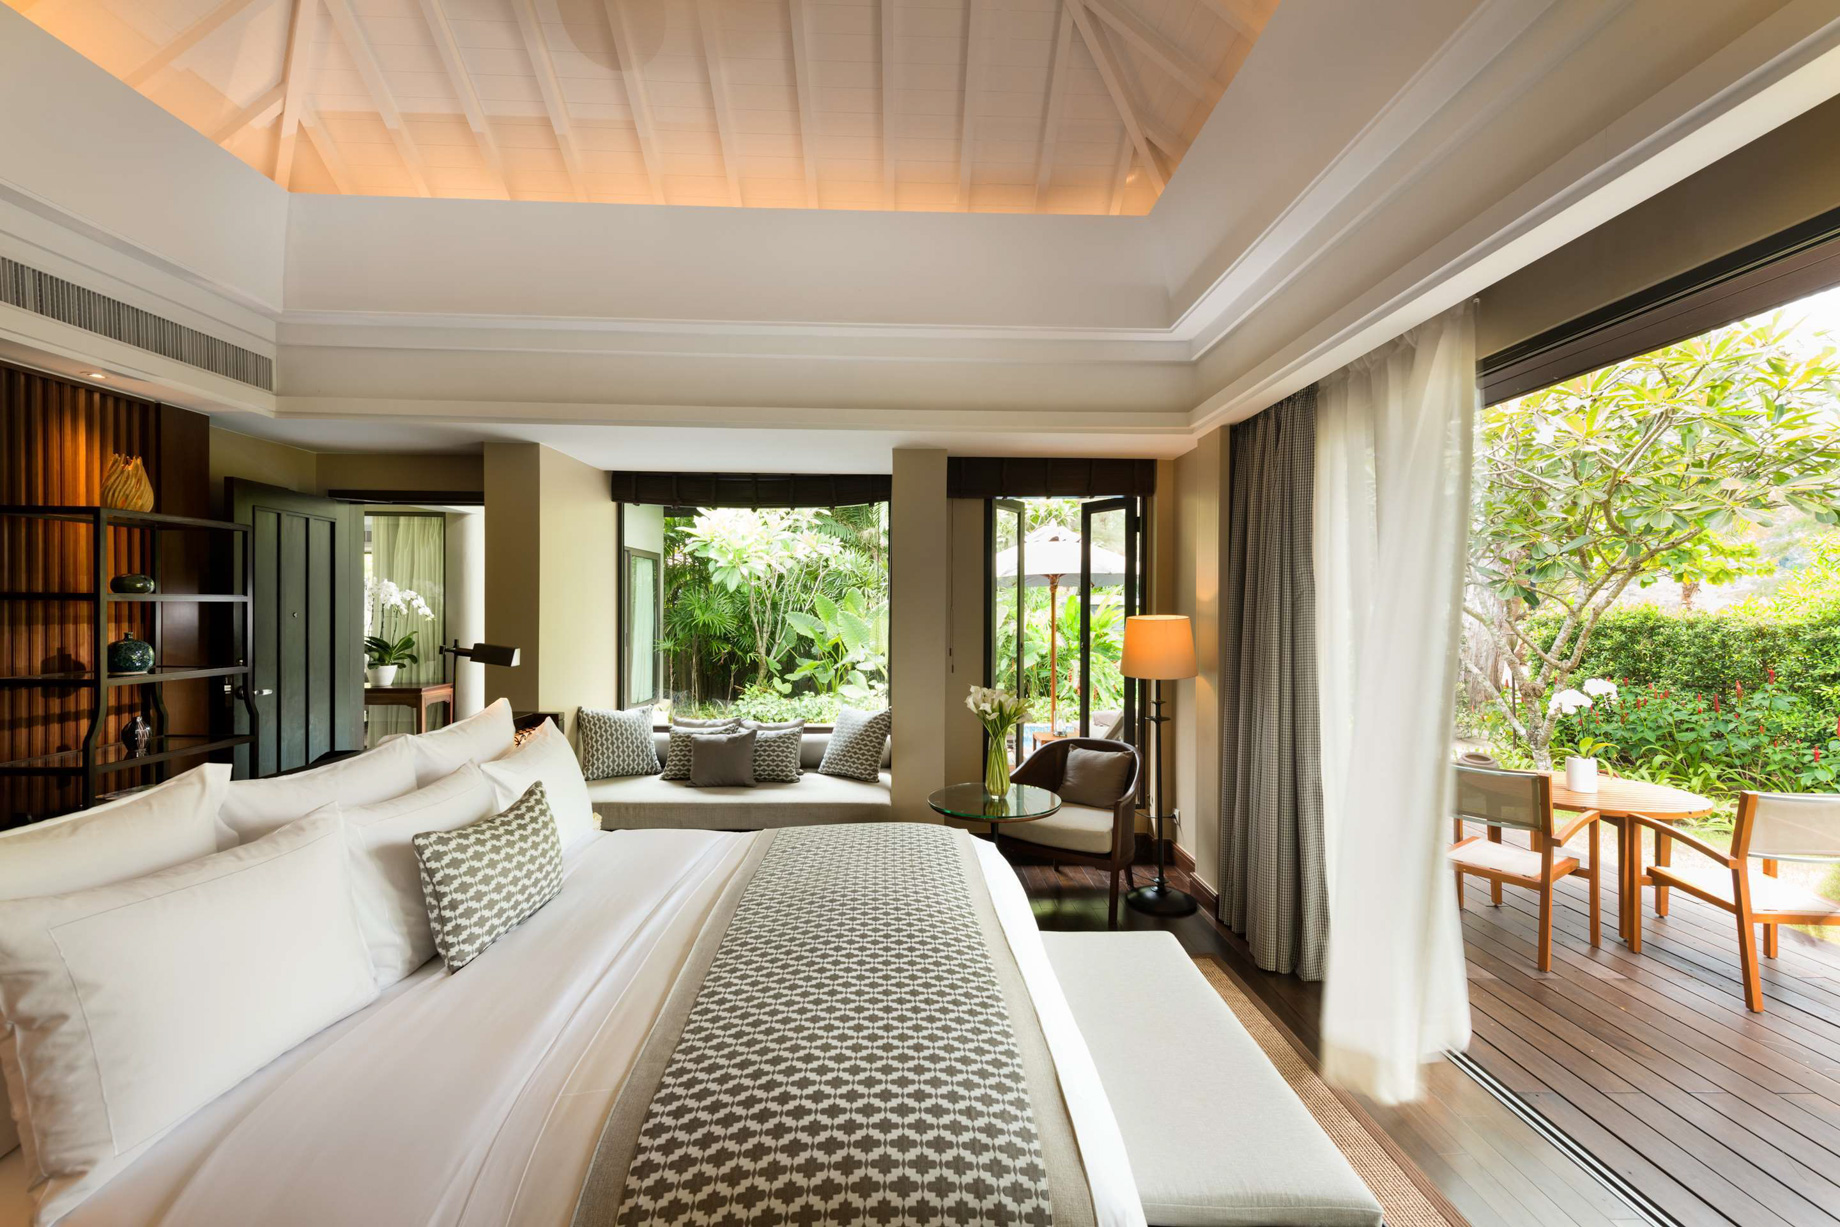 Anantara Layan Phuket Resort & Residences - Thailand - Beachfront Layan Pool Villa